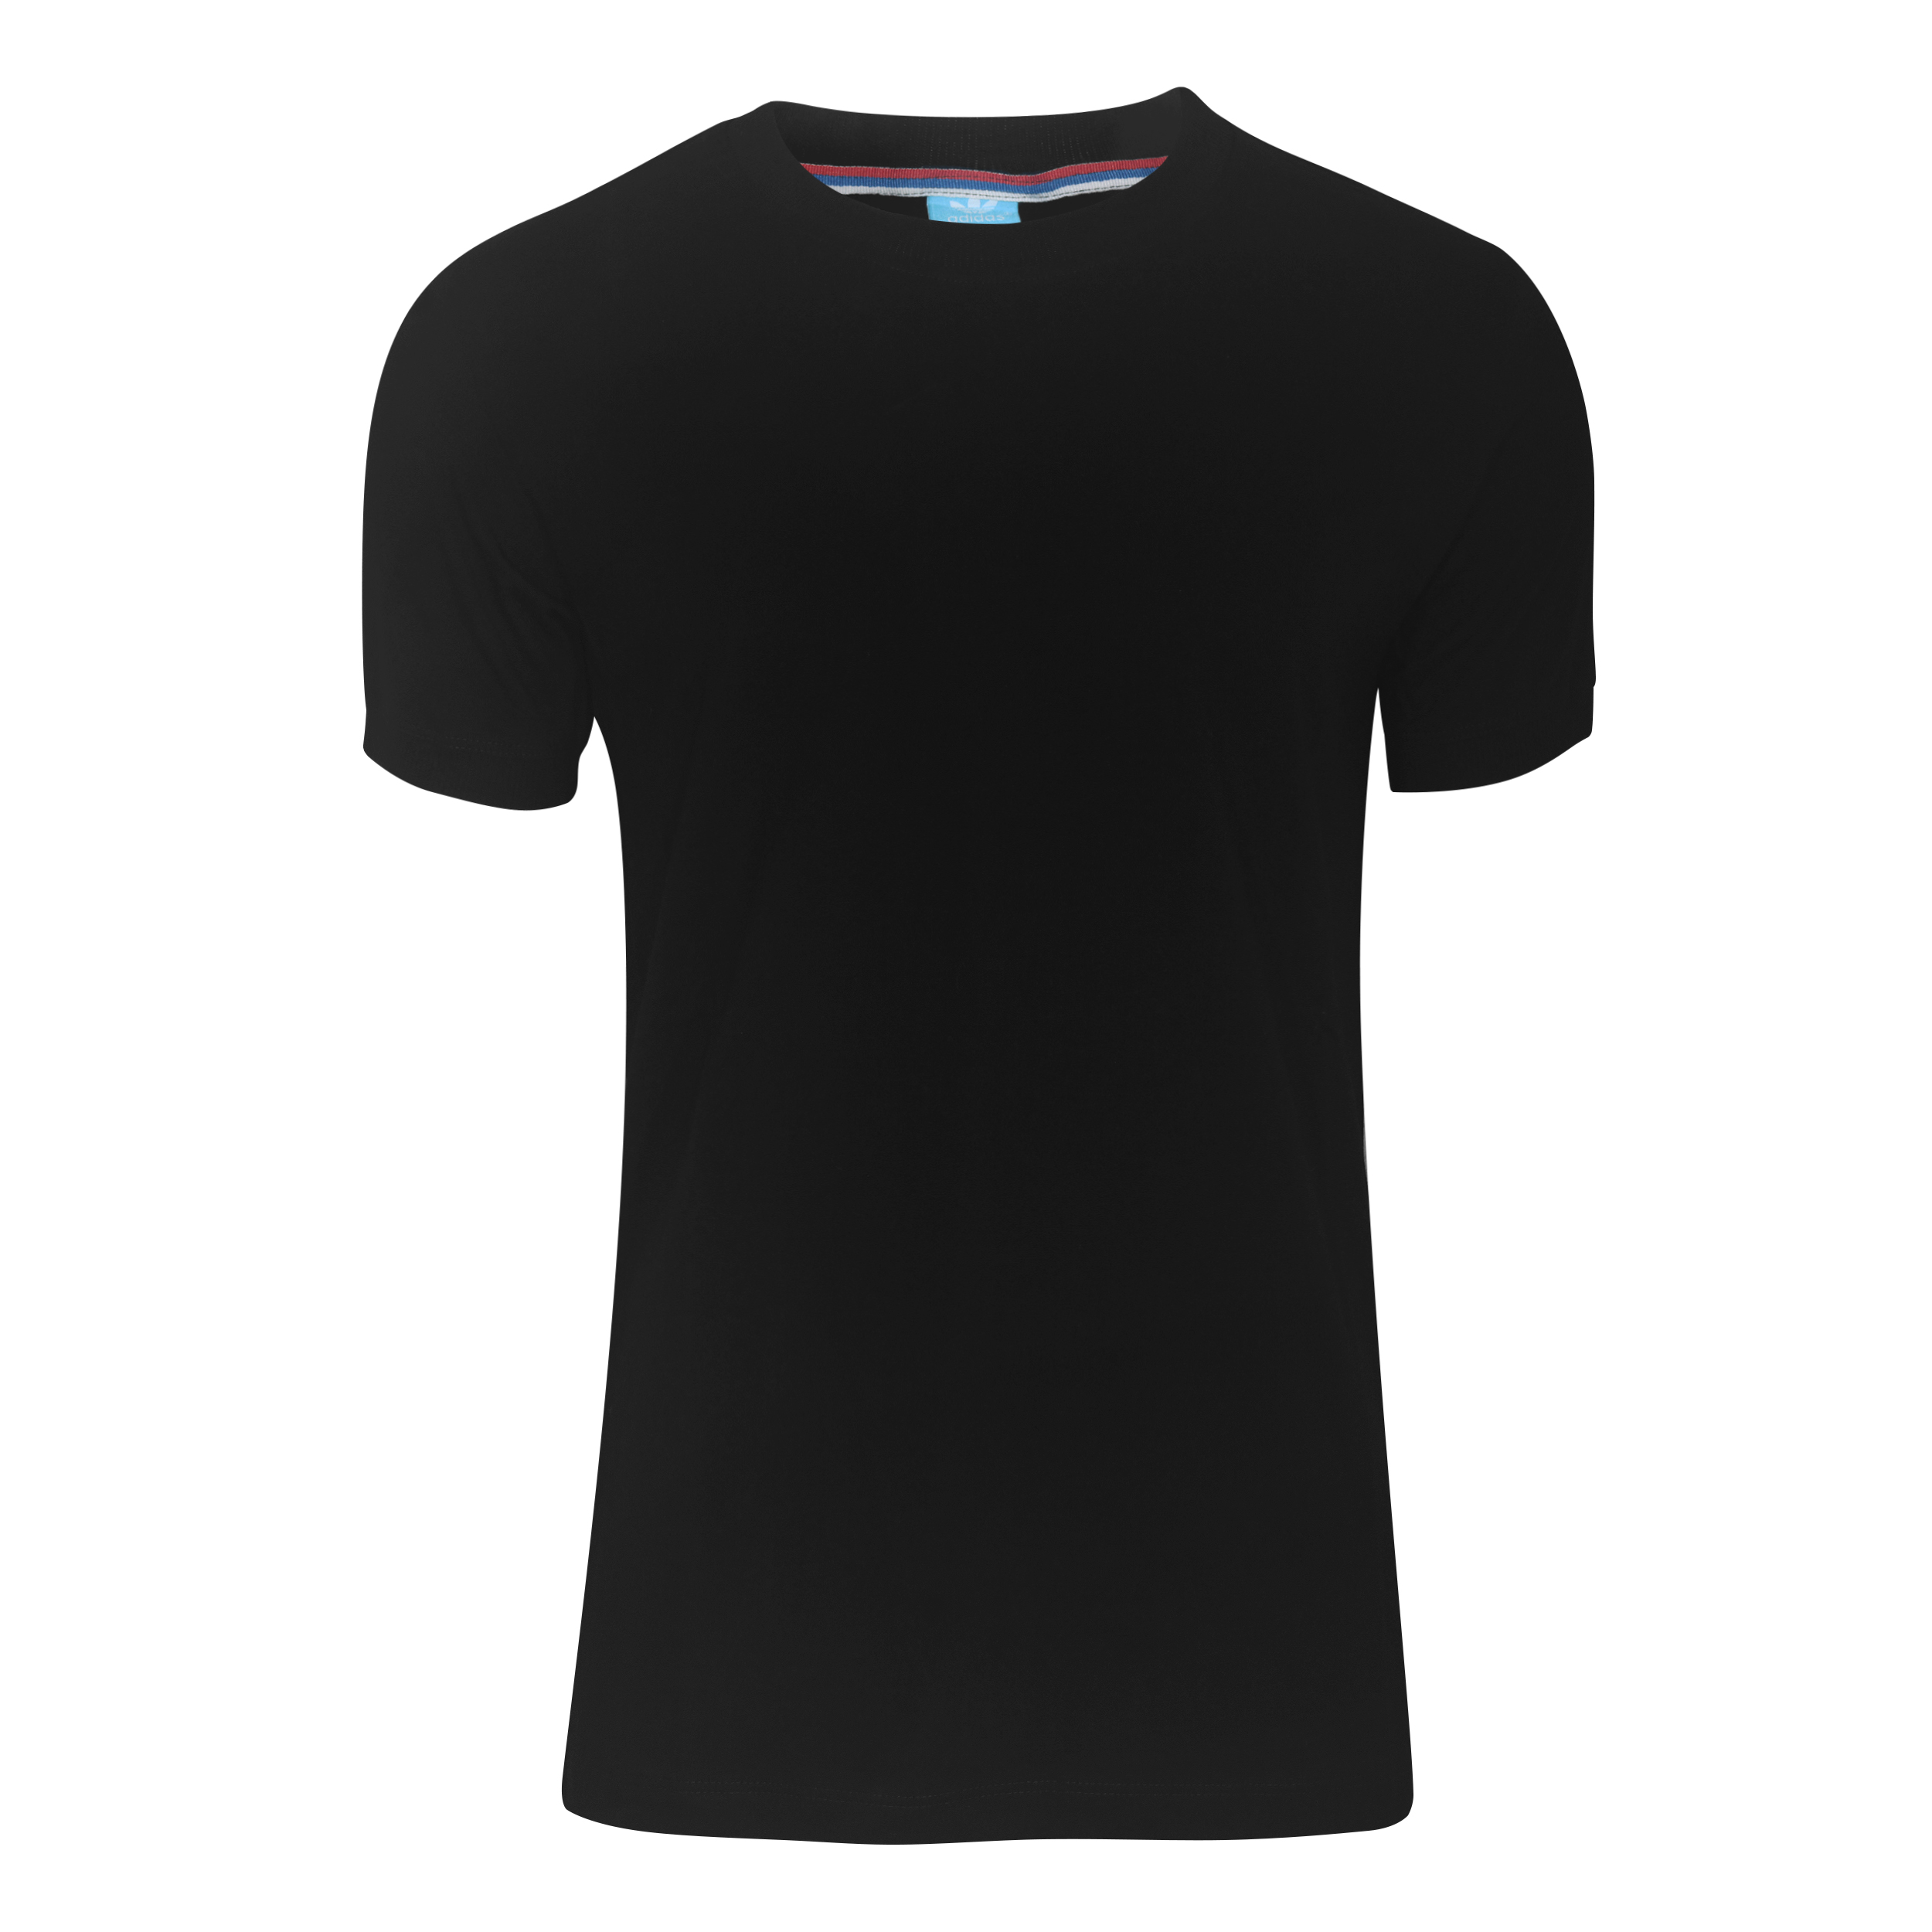 تی شرت ورزشی مردانه مدل Adblm141